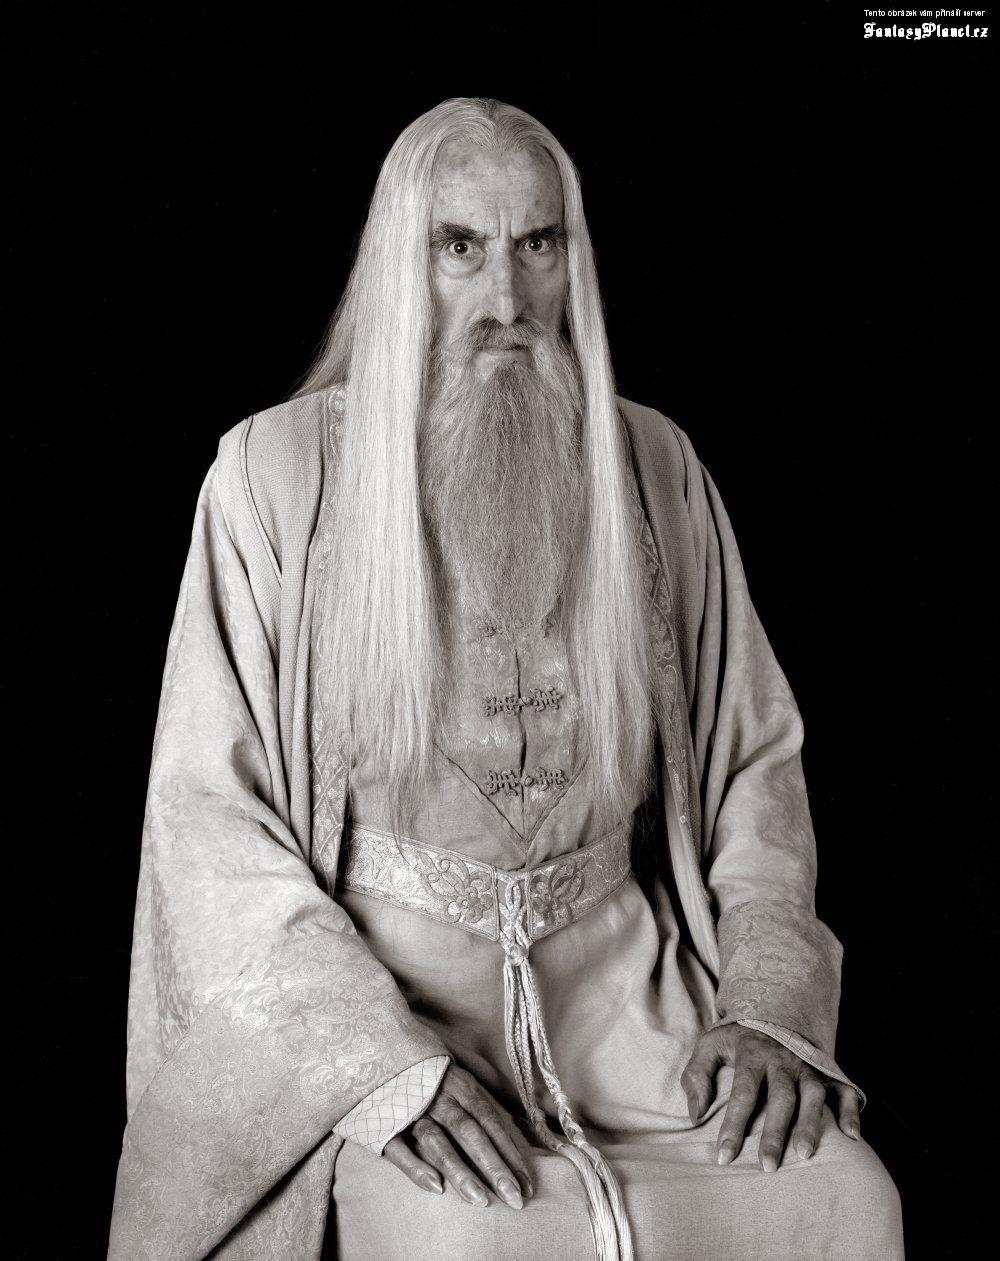 Images: Saruman The Grey